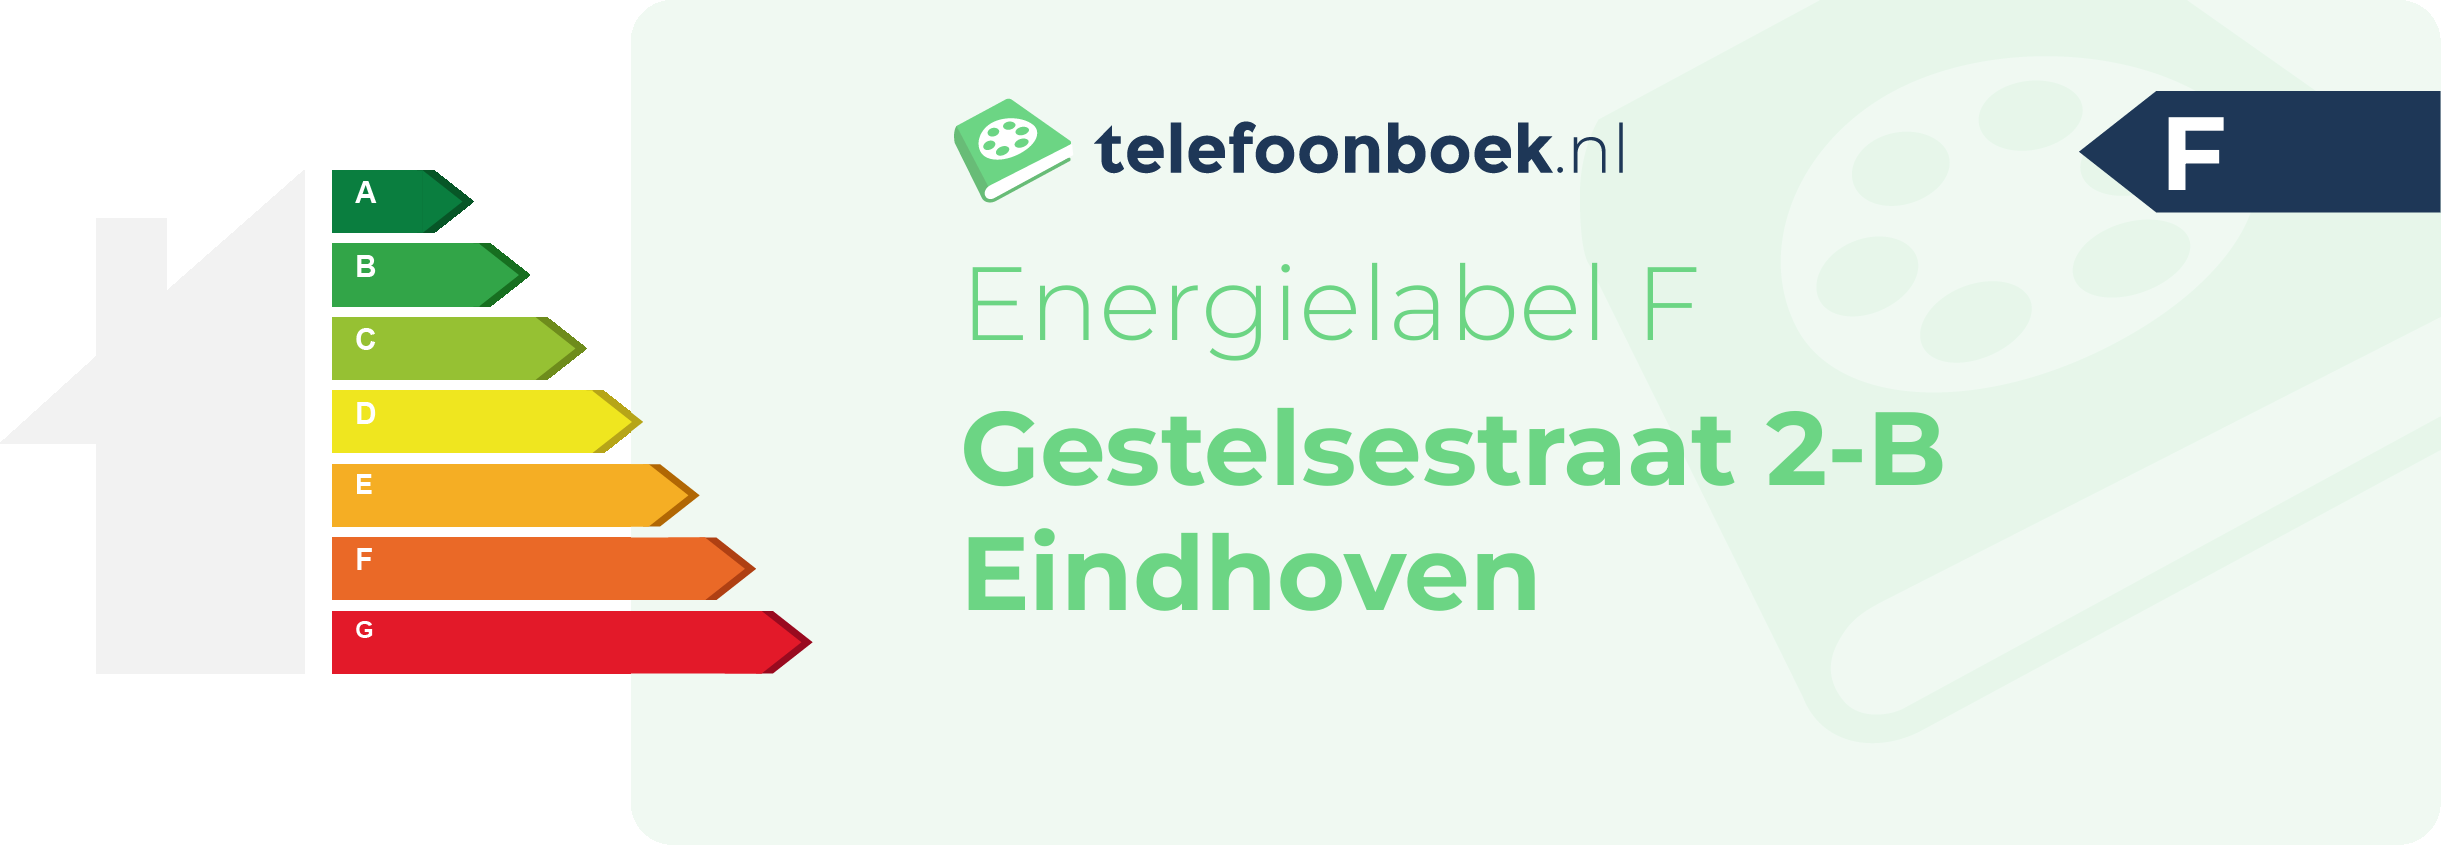 Energielabel Gestelsestraat 2-B Eindhoven